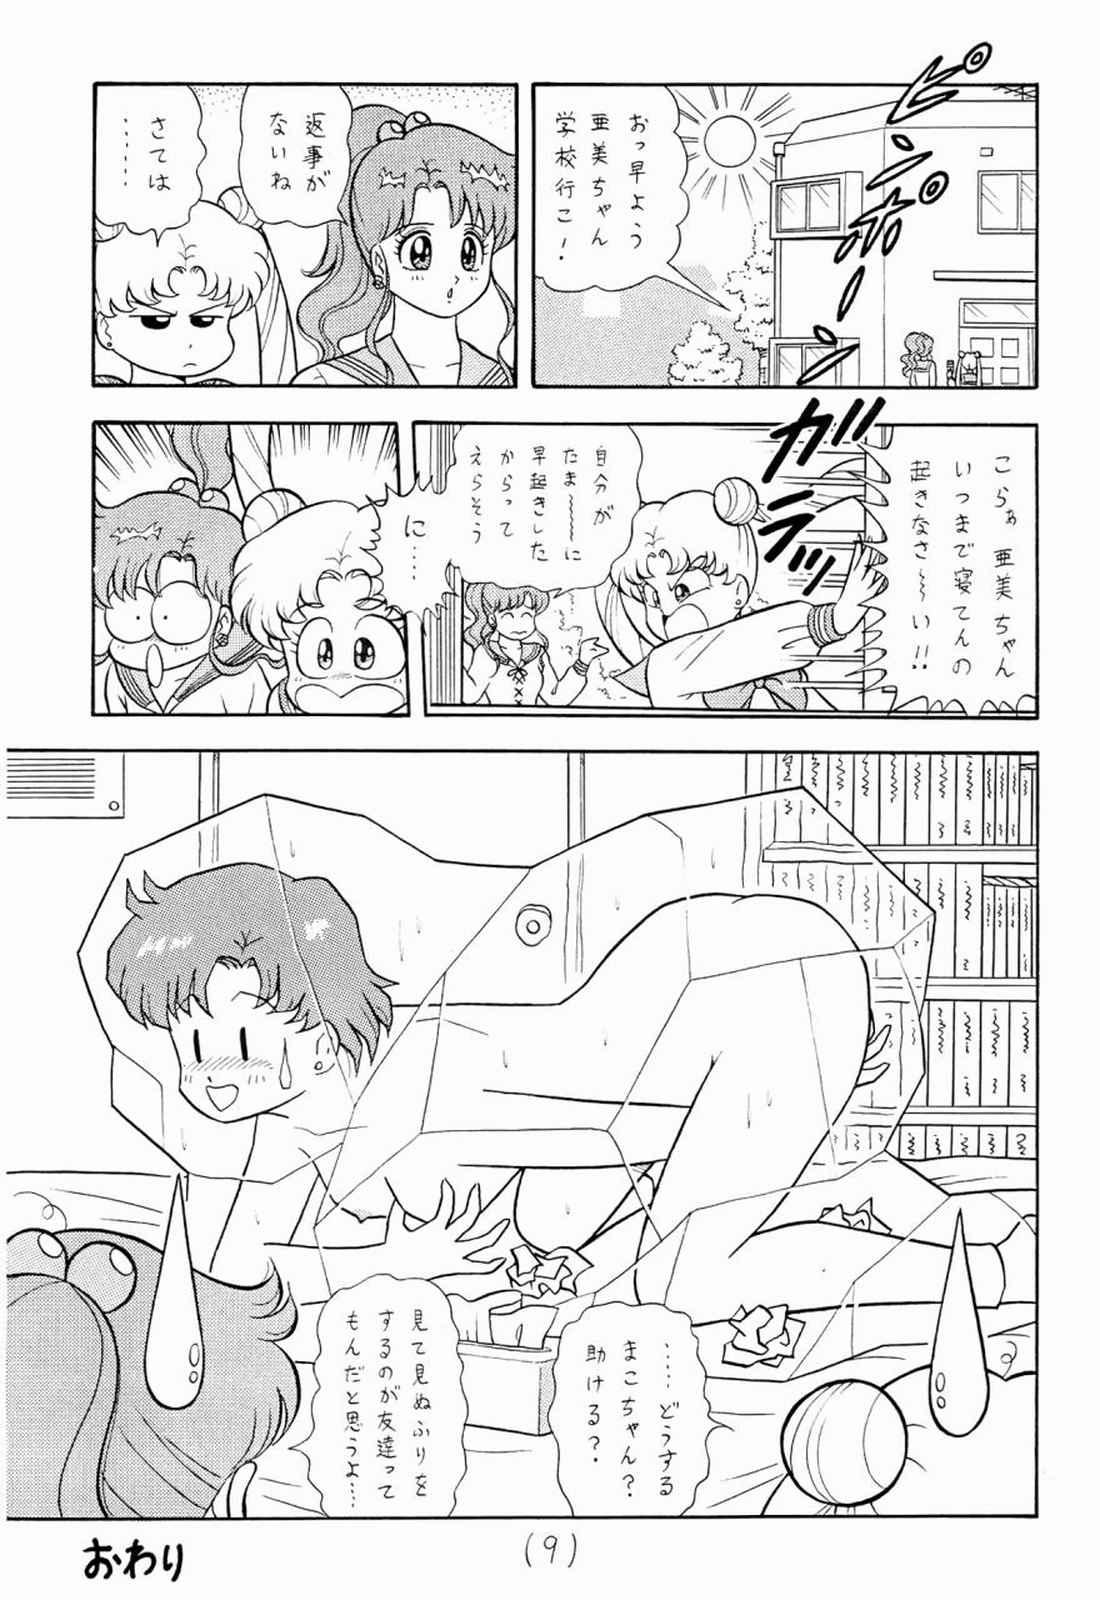 Perfect Tits Mun Mun Princess 1 - Sailor moon Chinese - Page 9